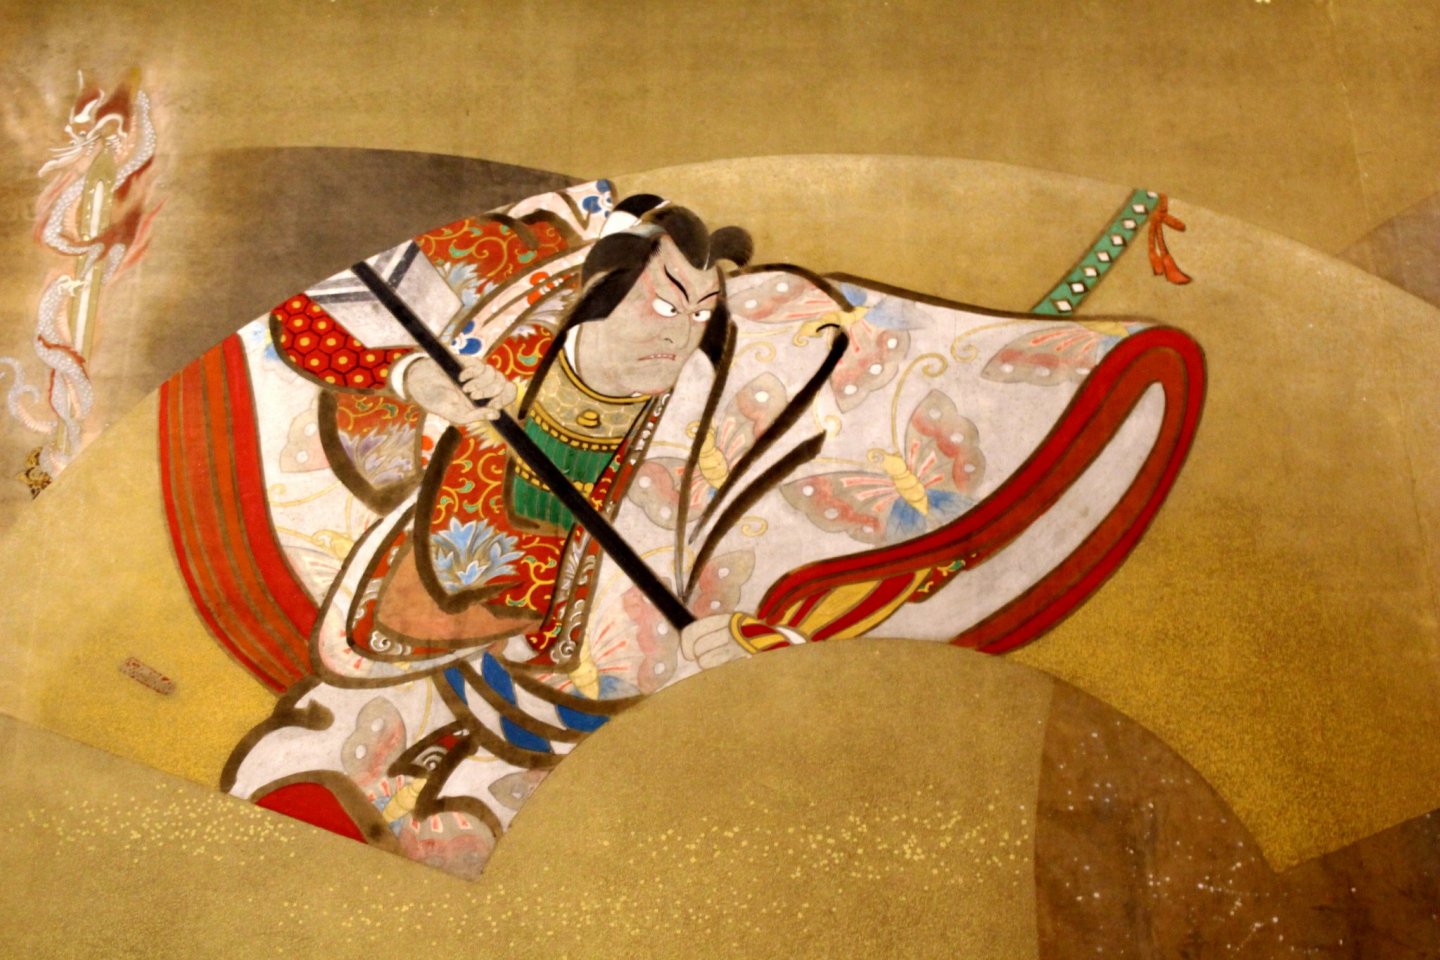 A painting at Hyakudan Kaidan